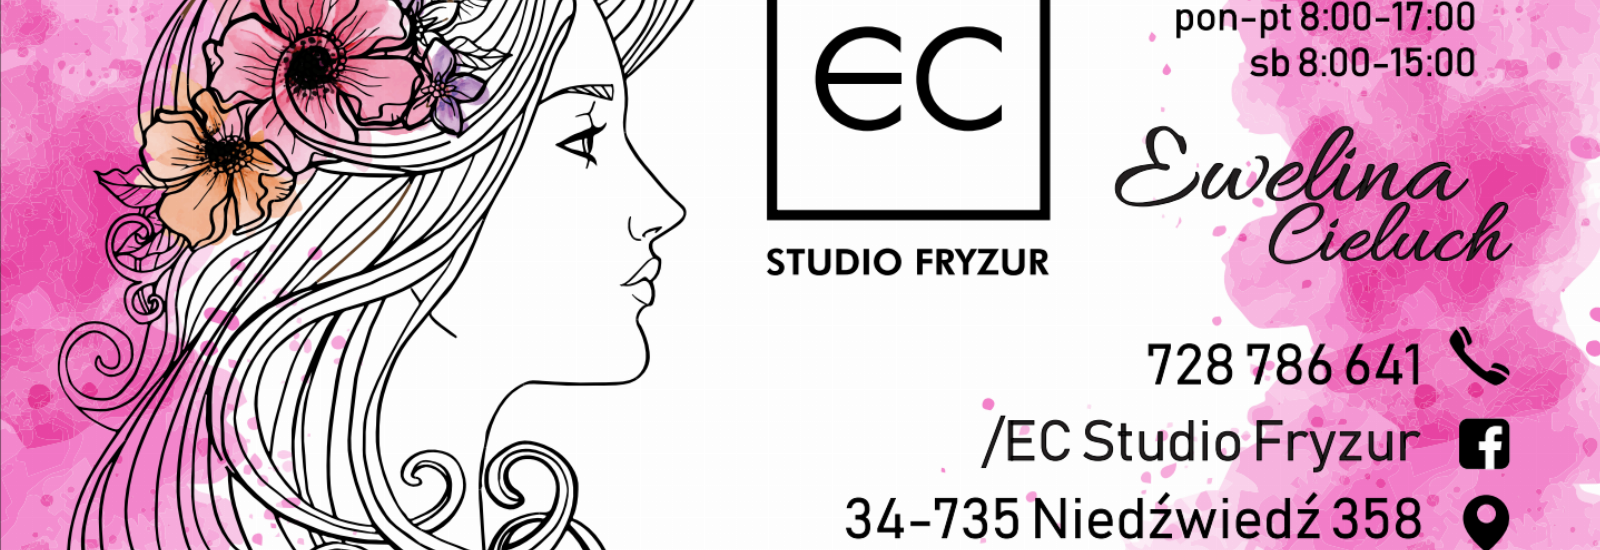 EC Studio Fryzur, Niedźwiedź, salon